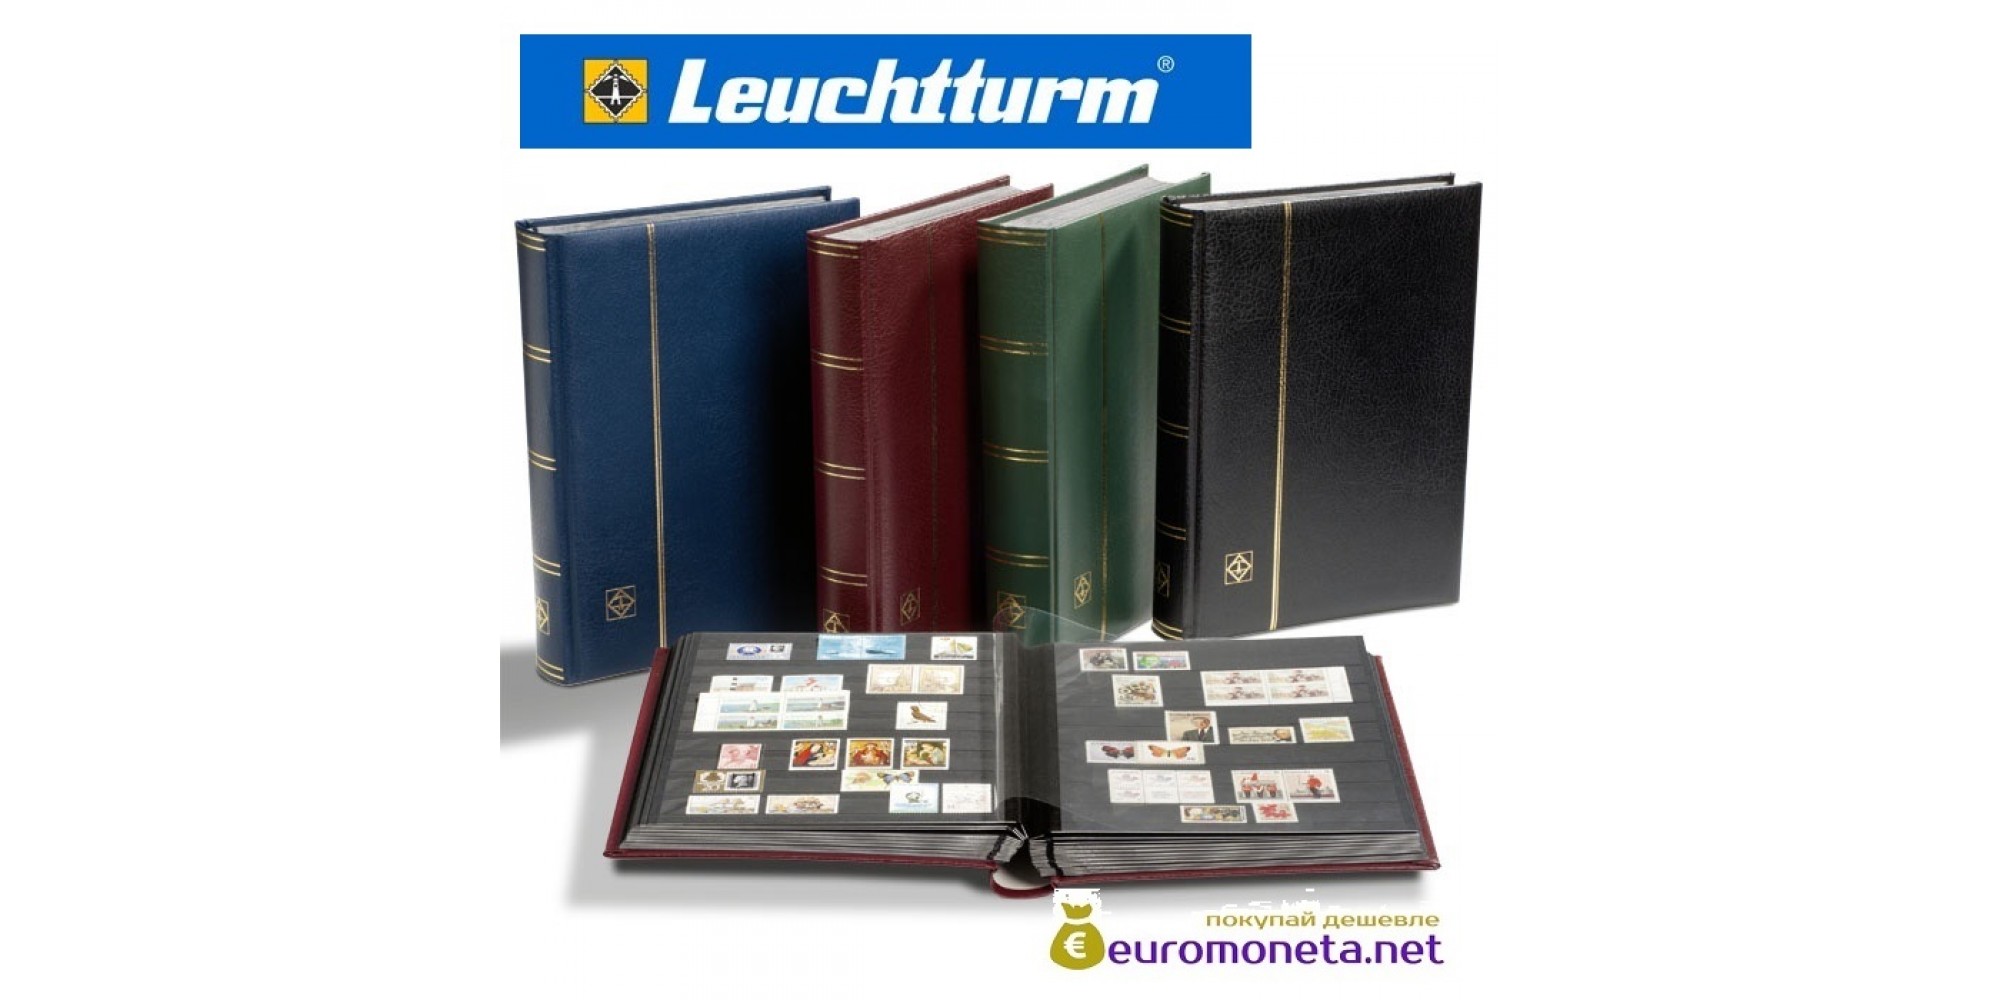 Leuchtturm альбом PREMIUM DIN A4 S32 синий, чёрные страницы, кожаная обложка, Германия